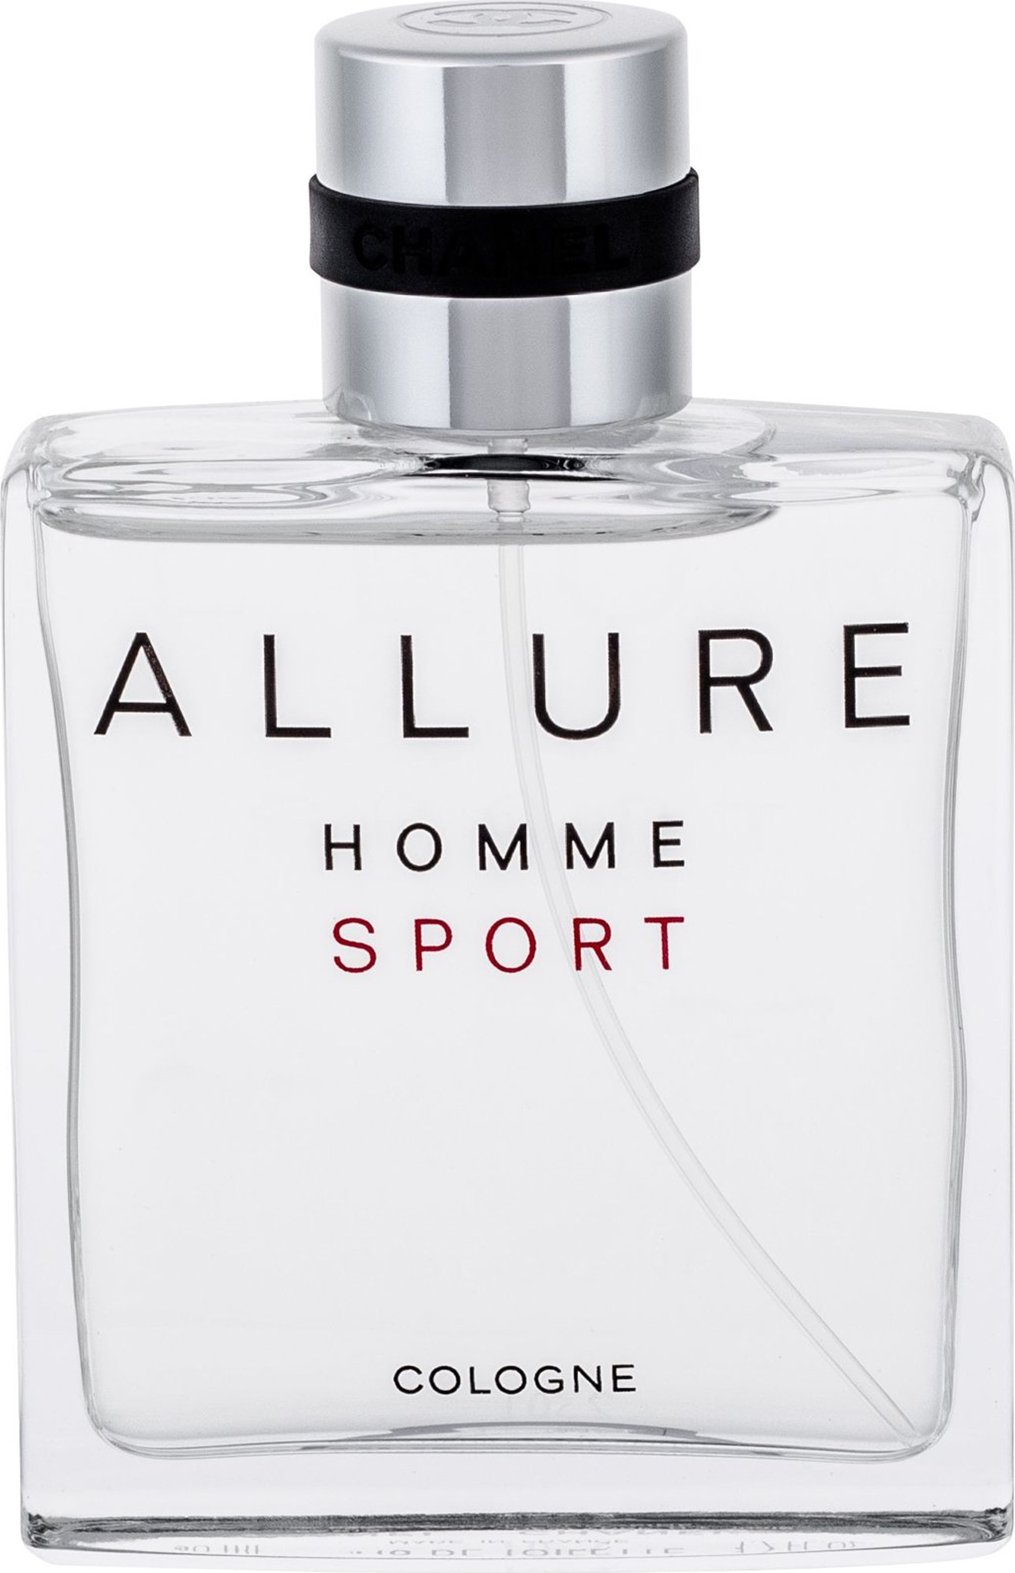 Chanel cologne sport. Chanel Allure Sport 100 ml. Chanel Allure homme Sport Cologne 100 ml. Chanel Allure homme Sport 50ml. Chanel Allure Sport Cologne 50ml.